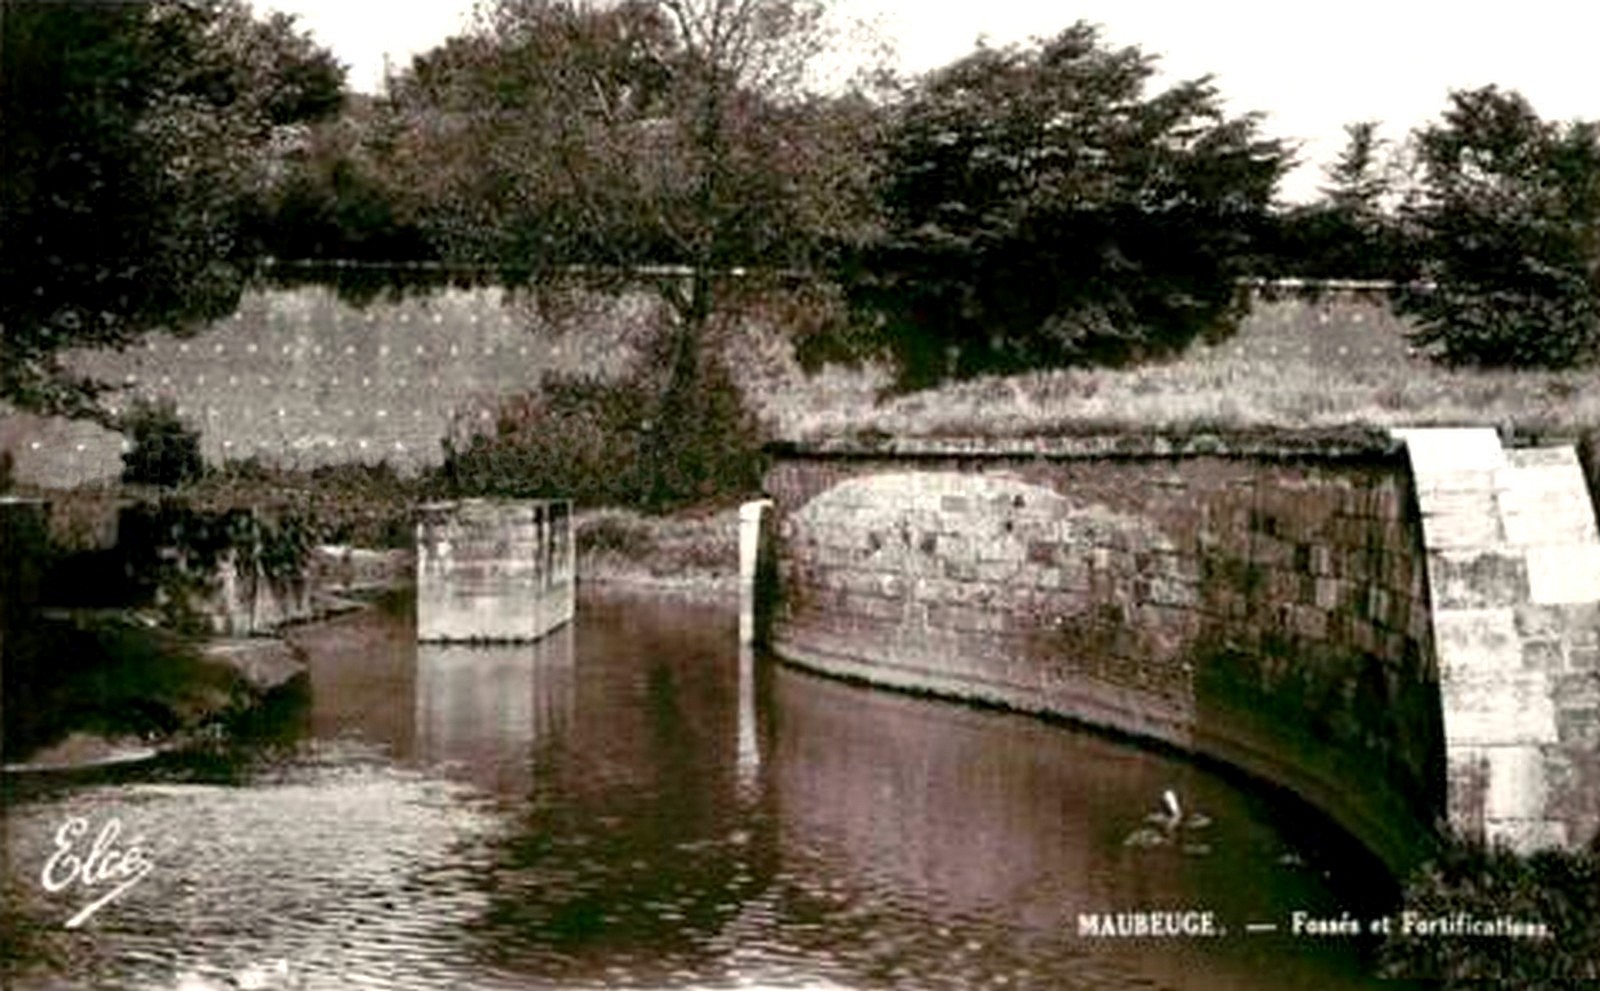 Maubeuge, Ecluse qui permettait de réguler le niveau d'eau dans les fossés sud de la ville.